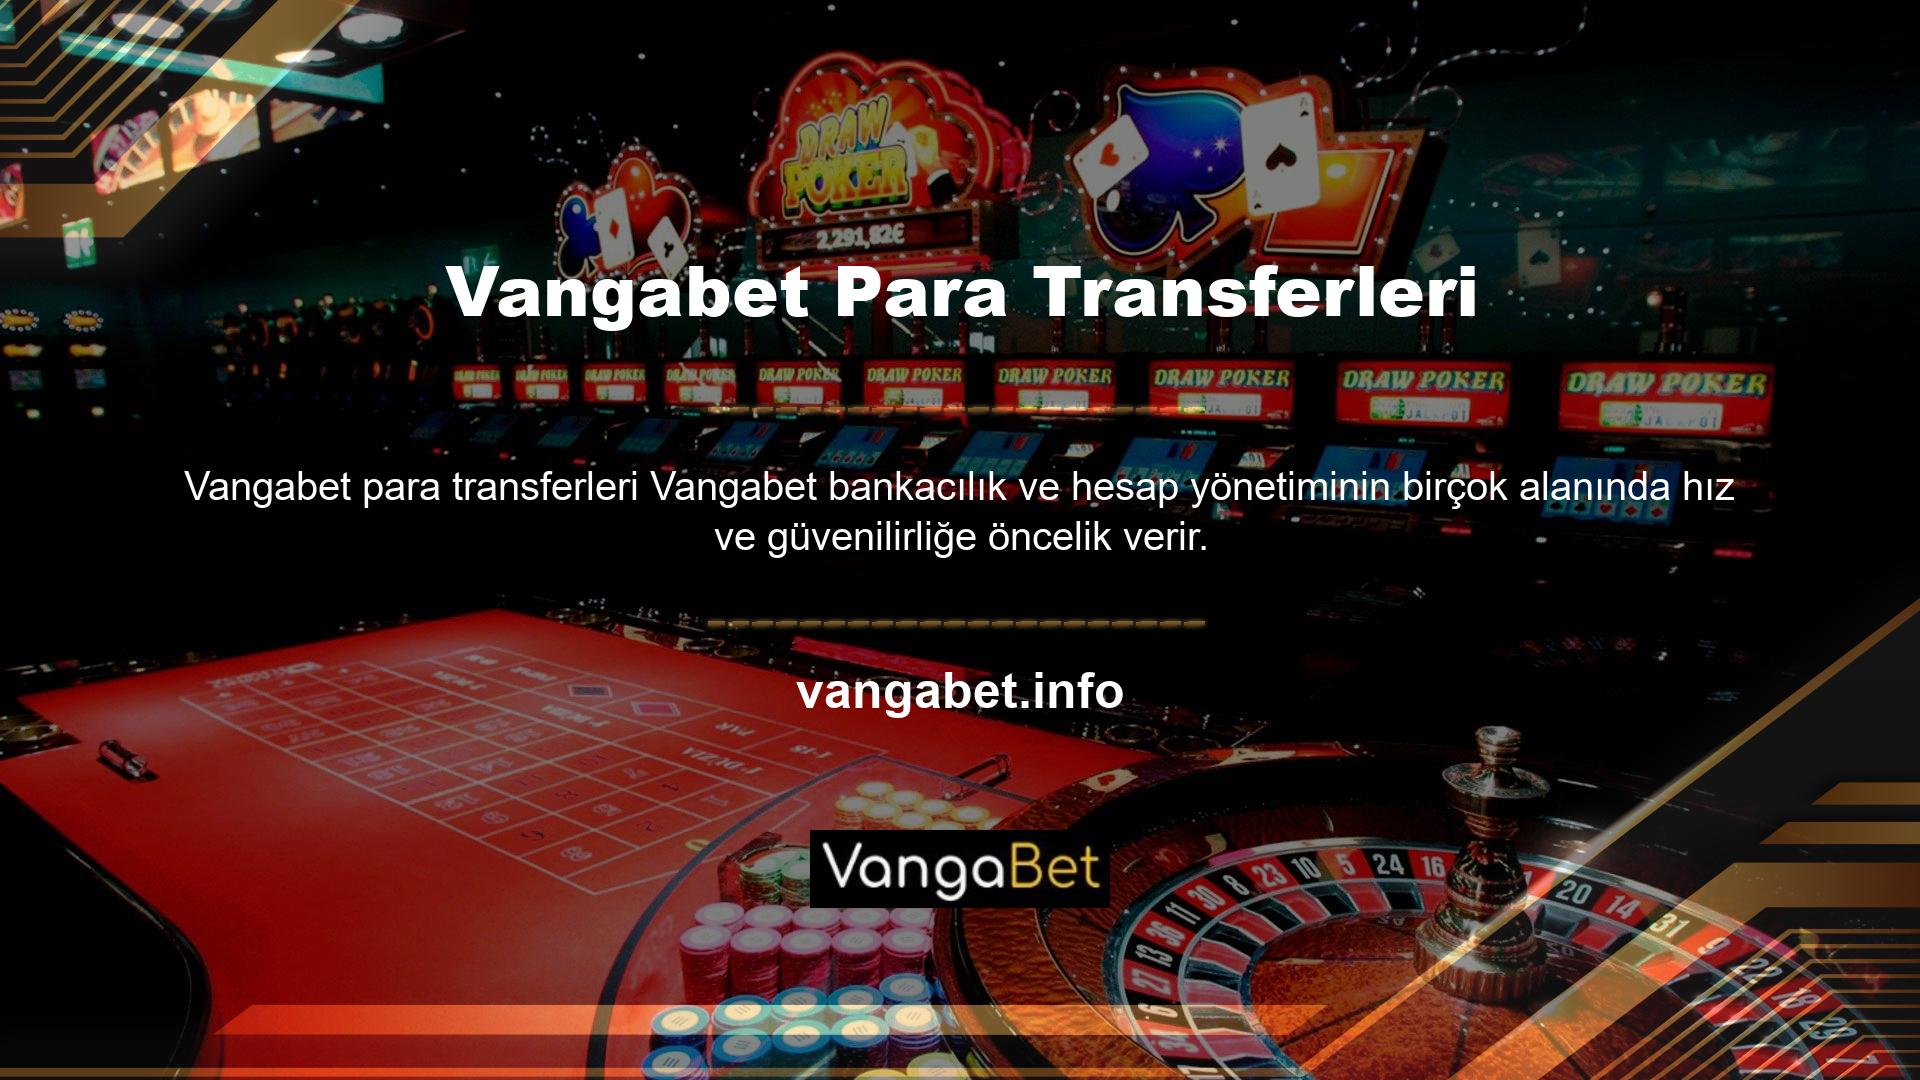 Doğrudan hesaplarına para aktarmak isteyenler için Vangabet, işlemi profesyonel bir ajansın gerçekleştirmesini sağlar